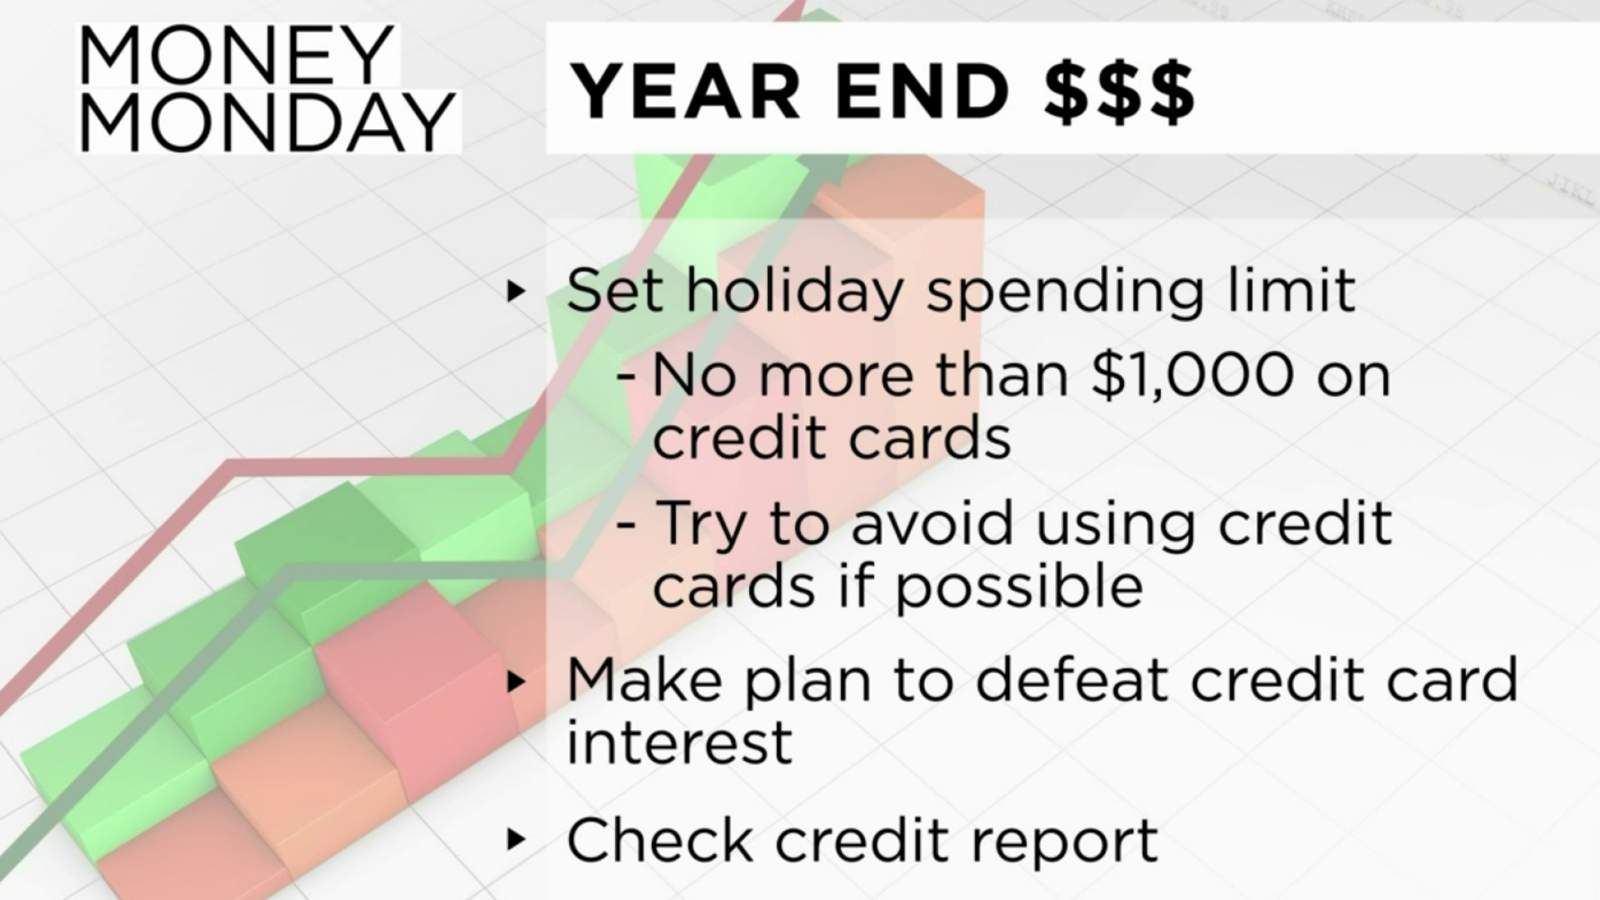 Money Monday: Year end finances plan